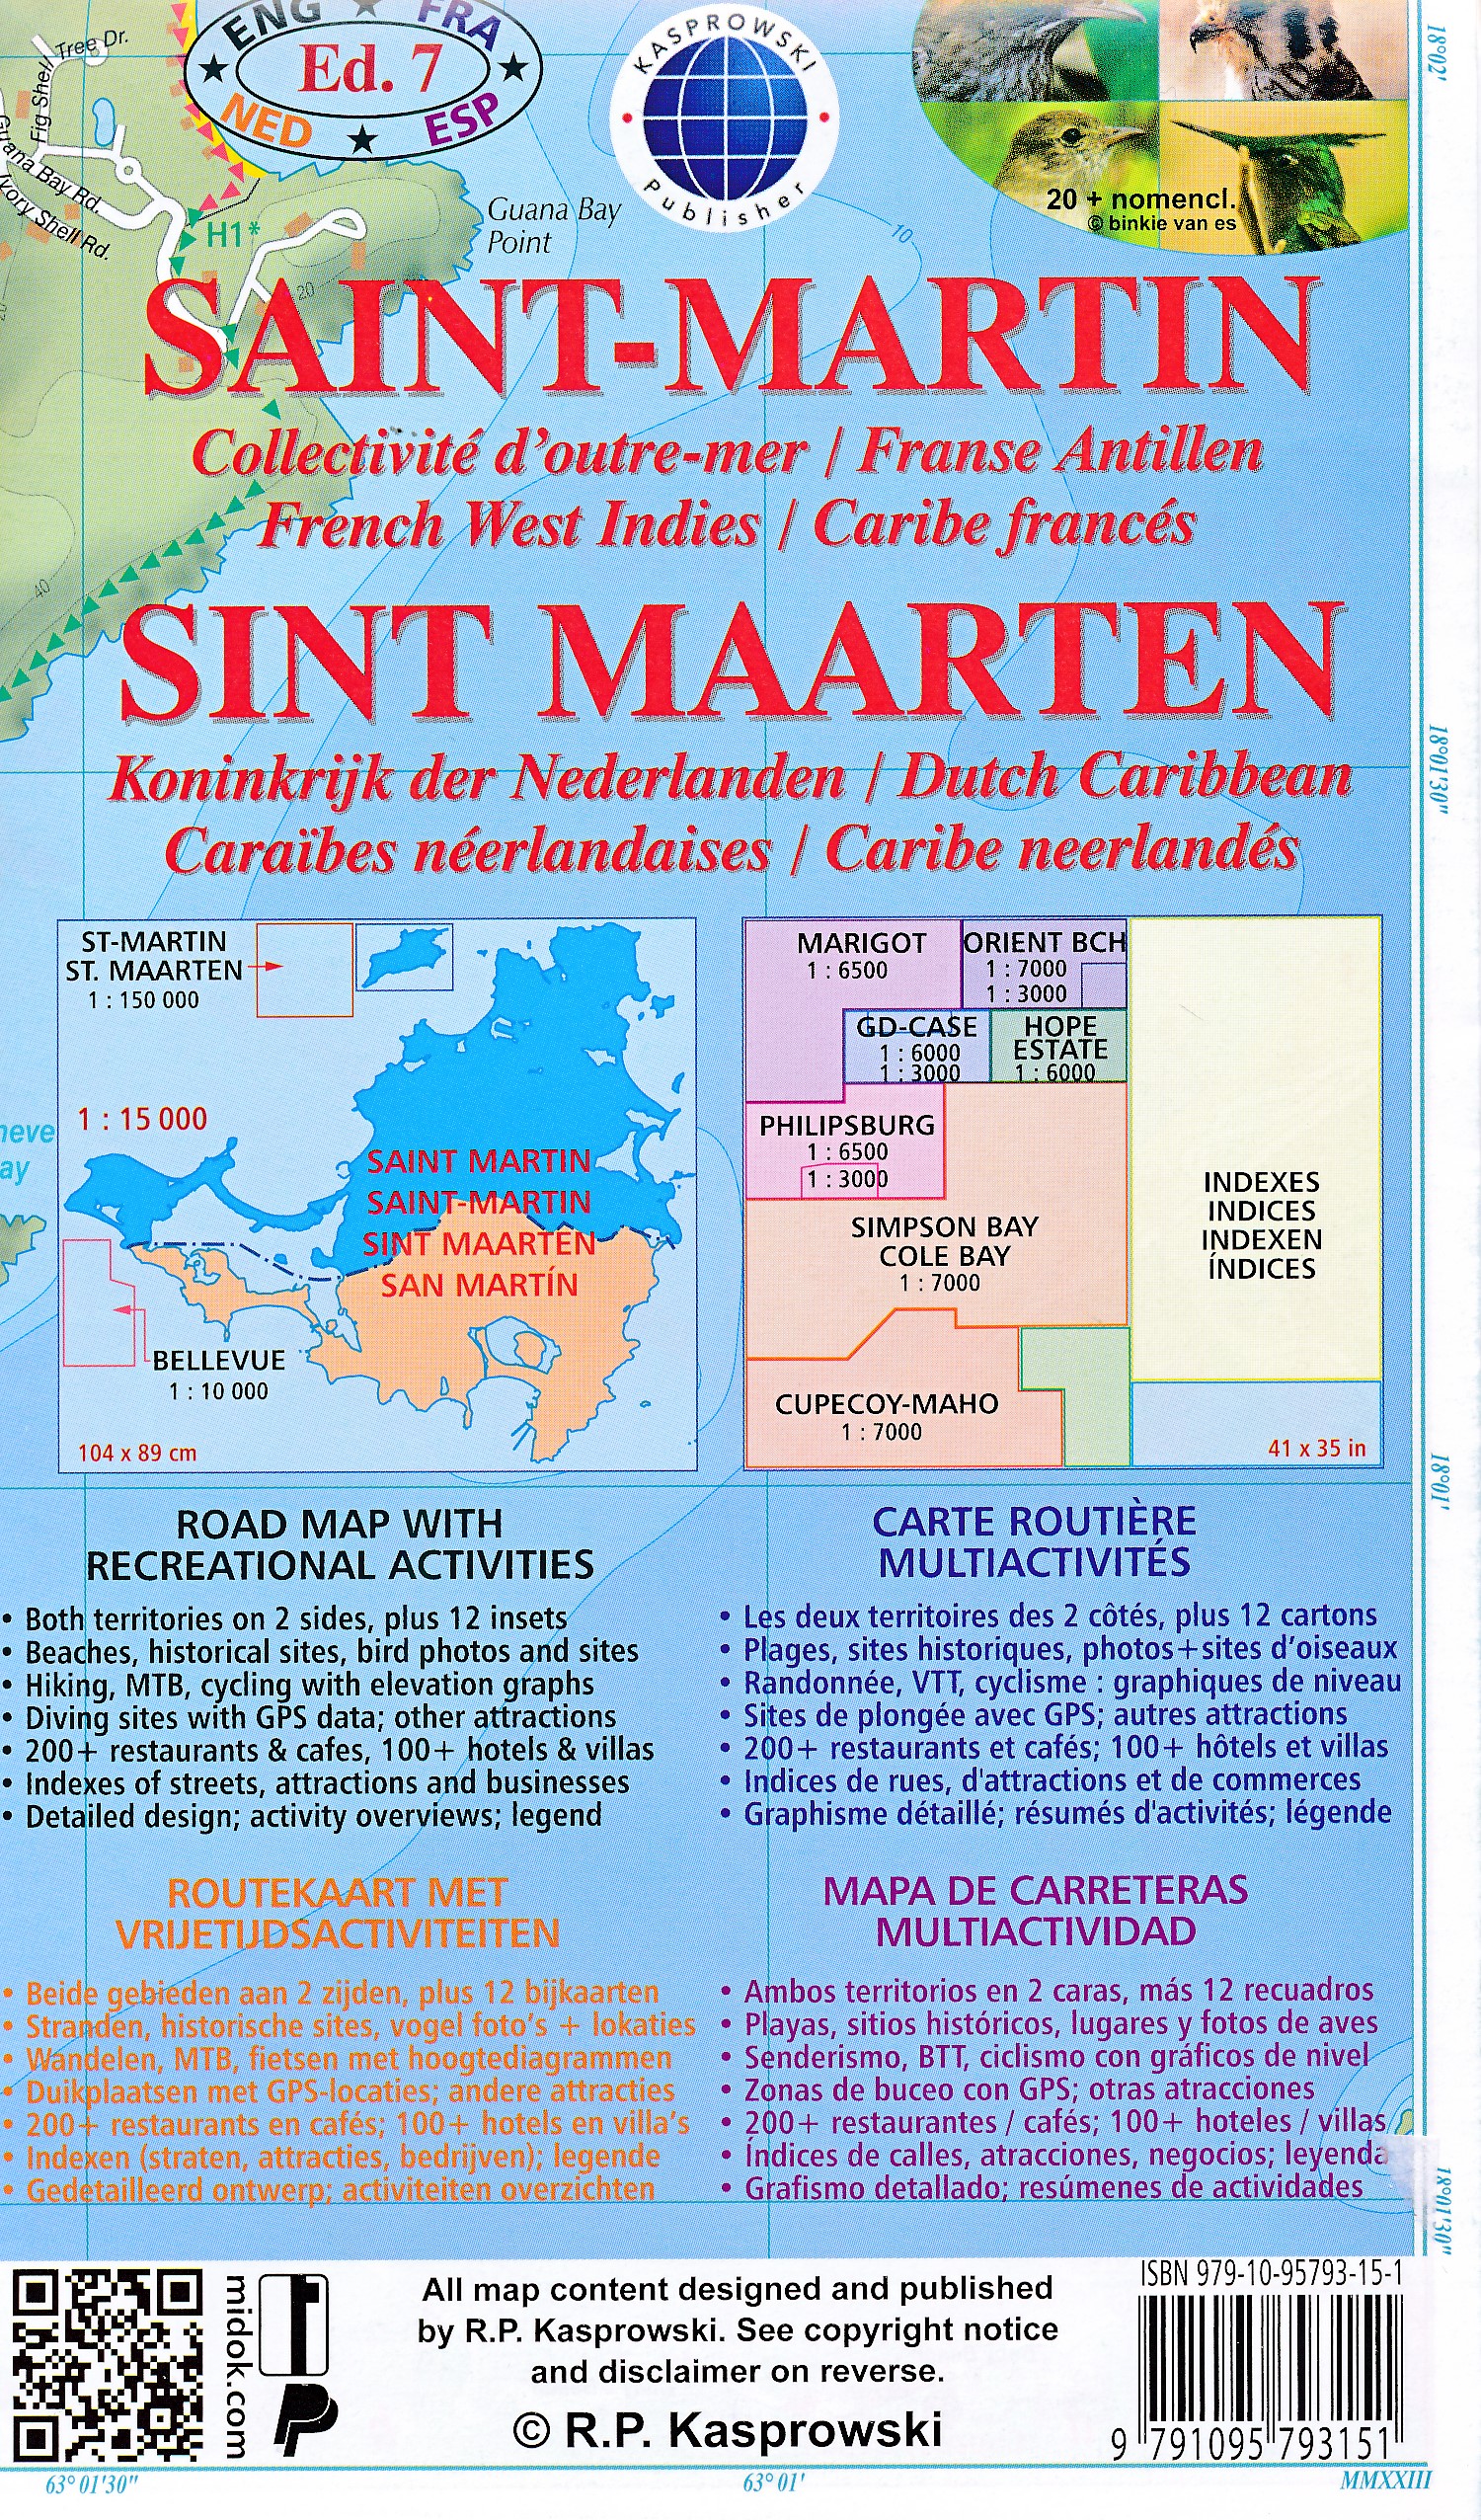 Online bestellen: Wandelkaart - Wegenkaart - landkaart Sint Maarten - St. Martin | Kasprowski Maps